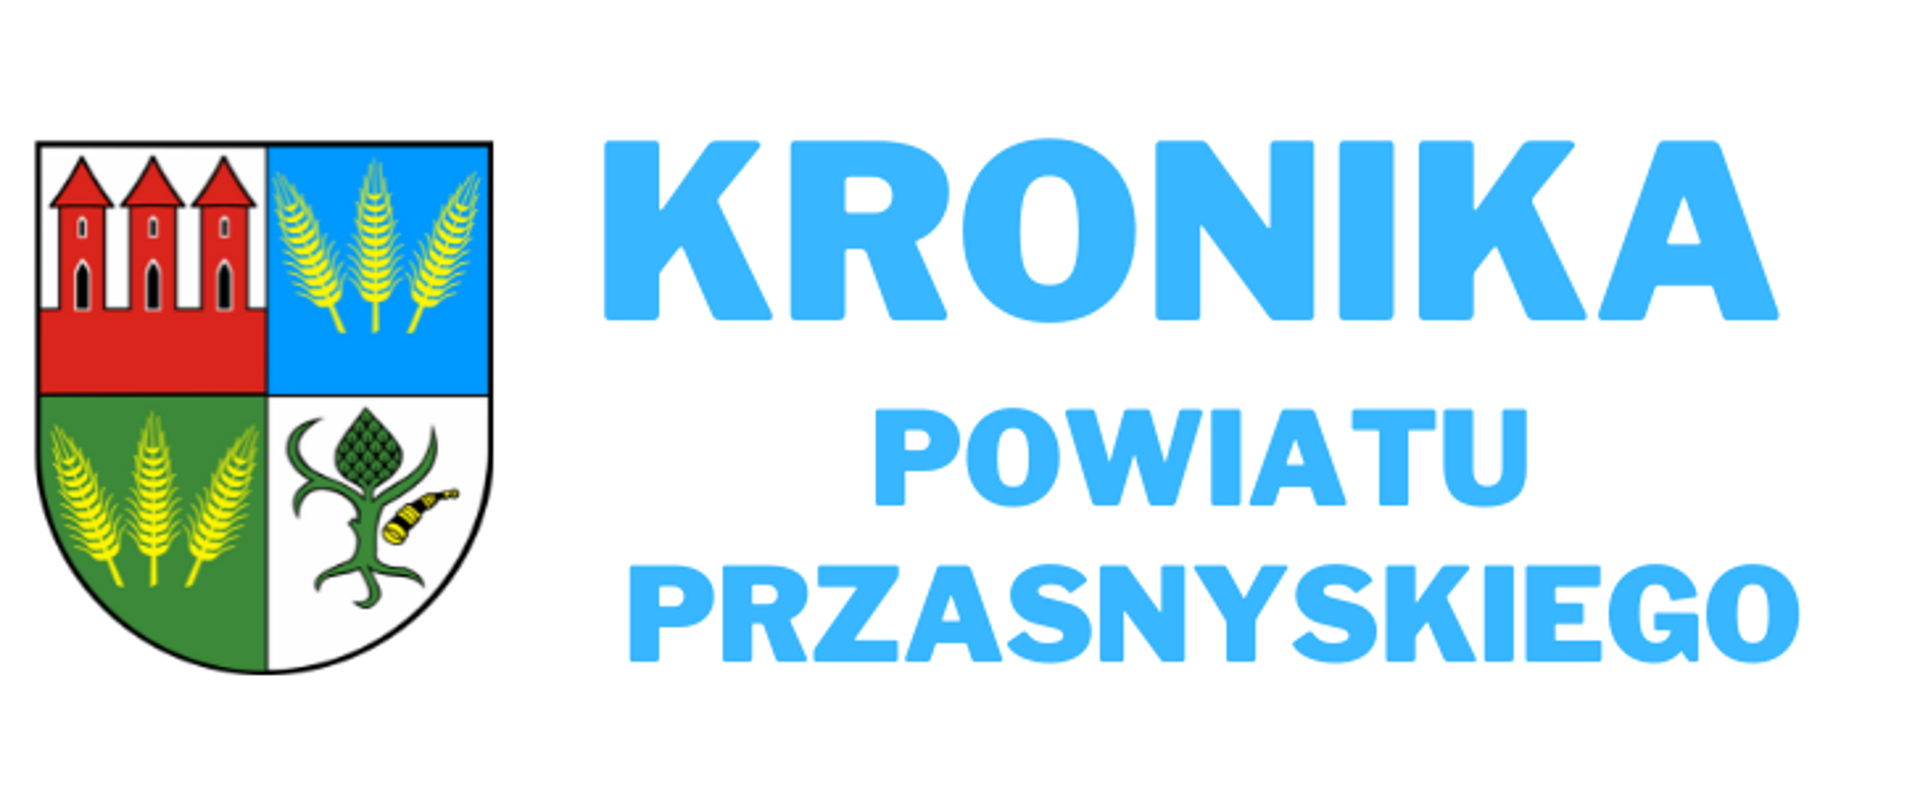 Grafika przedstawia herb Powiatu Przasnyskiego po lewej stronie i niebieski napis "Kronika Powiatu Przasnyskiego" biegnąca od środka do prawej strony,